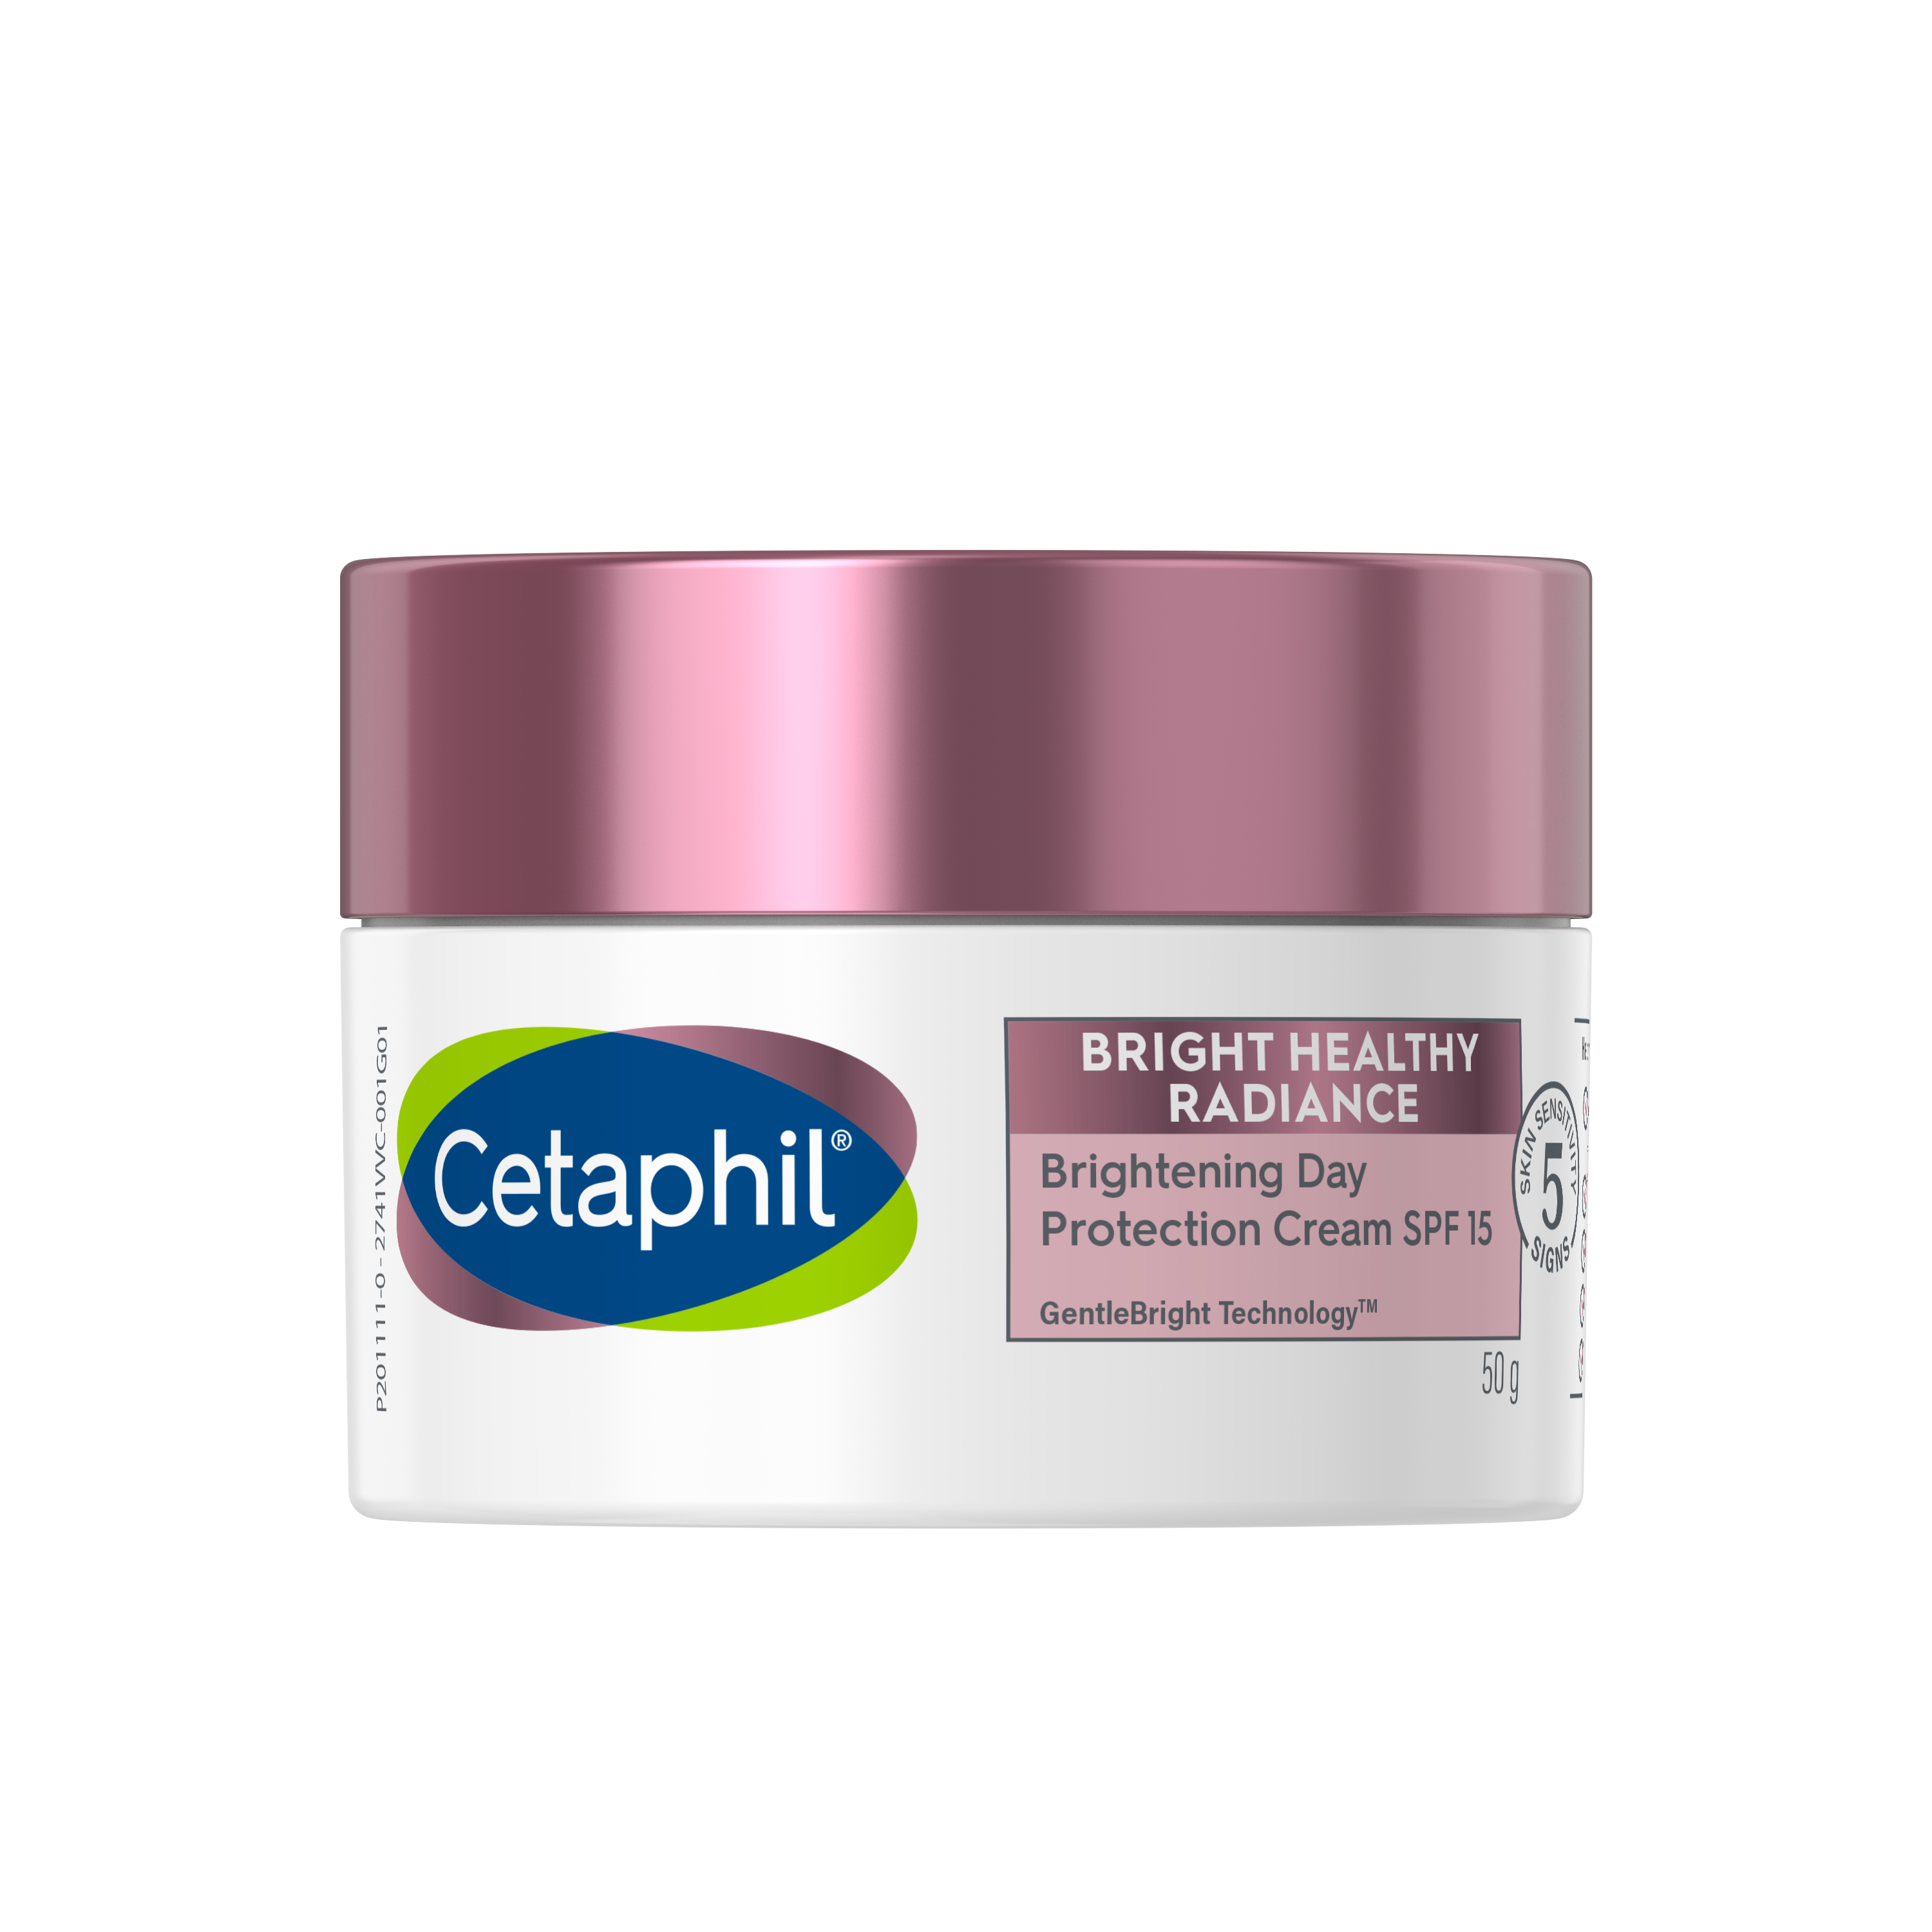 Kem dưỡng ẩm làm sáng da ban ngày Cetaphil Bright Healthy Radiance Day Protection Cream SPF15